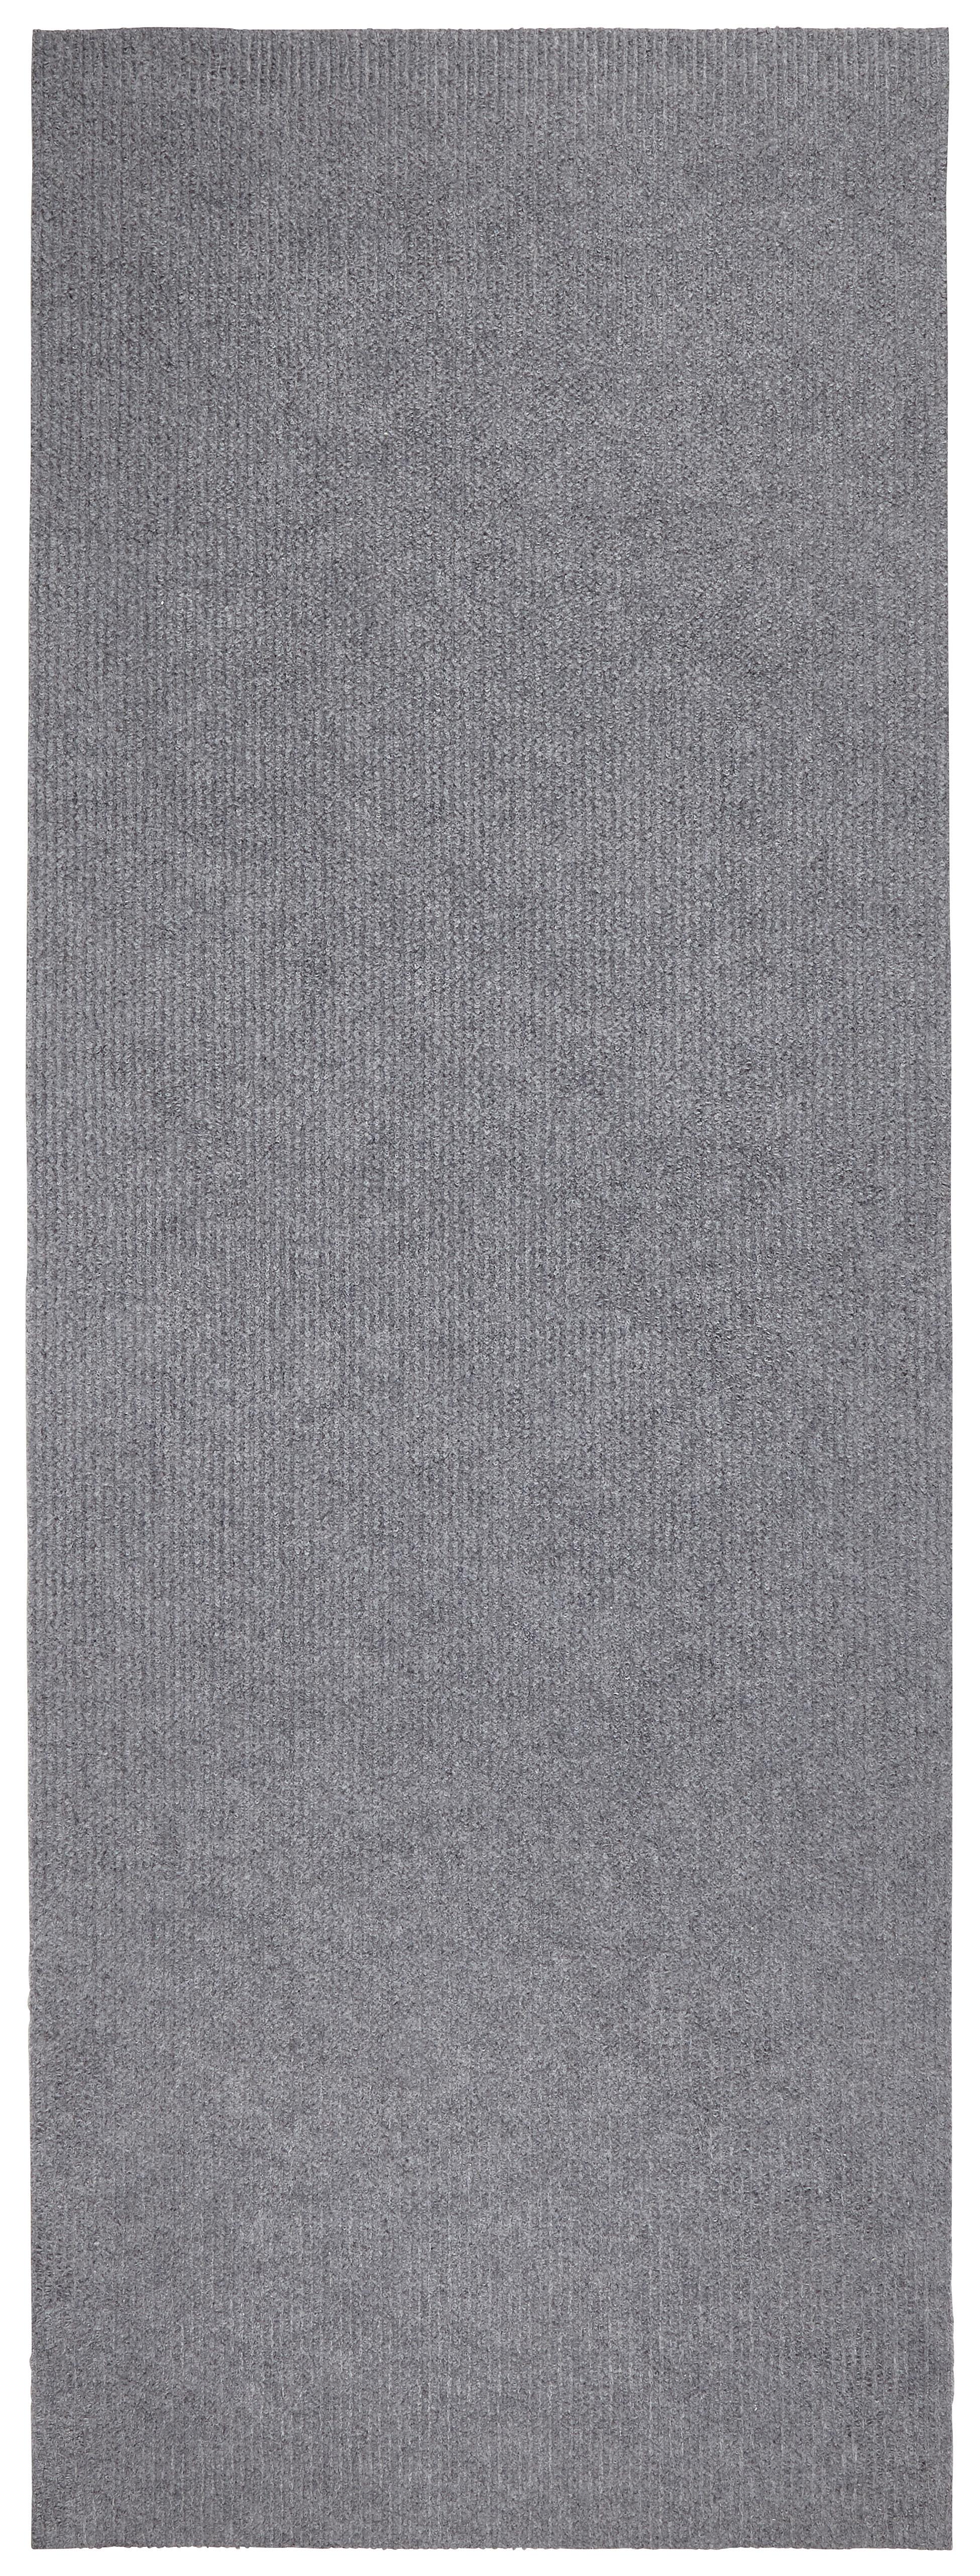 Futó Niki 66/180 - Színes, konvencionális, Textil (66/180cm) - Modern Living